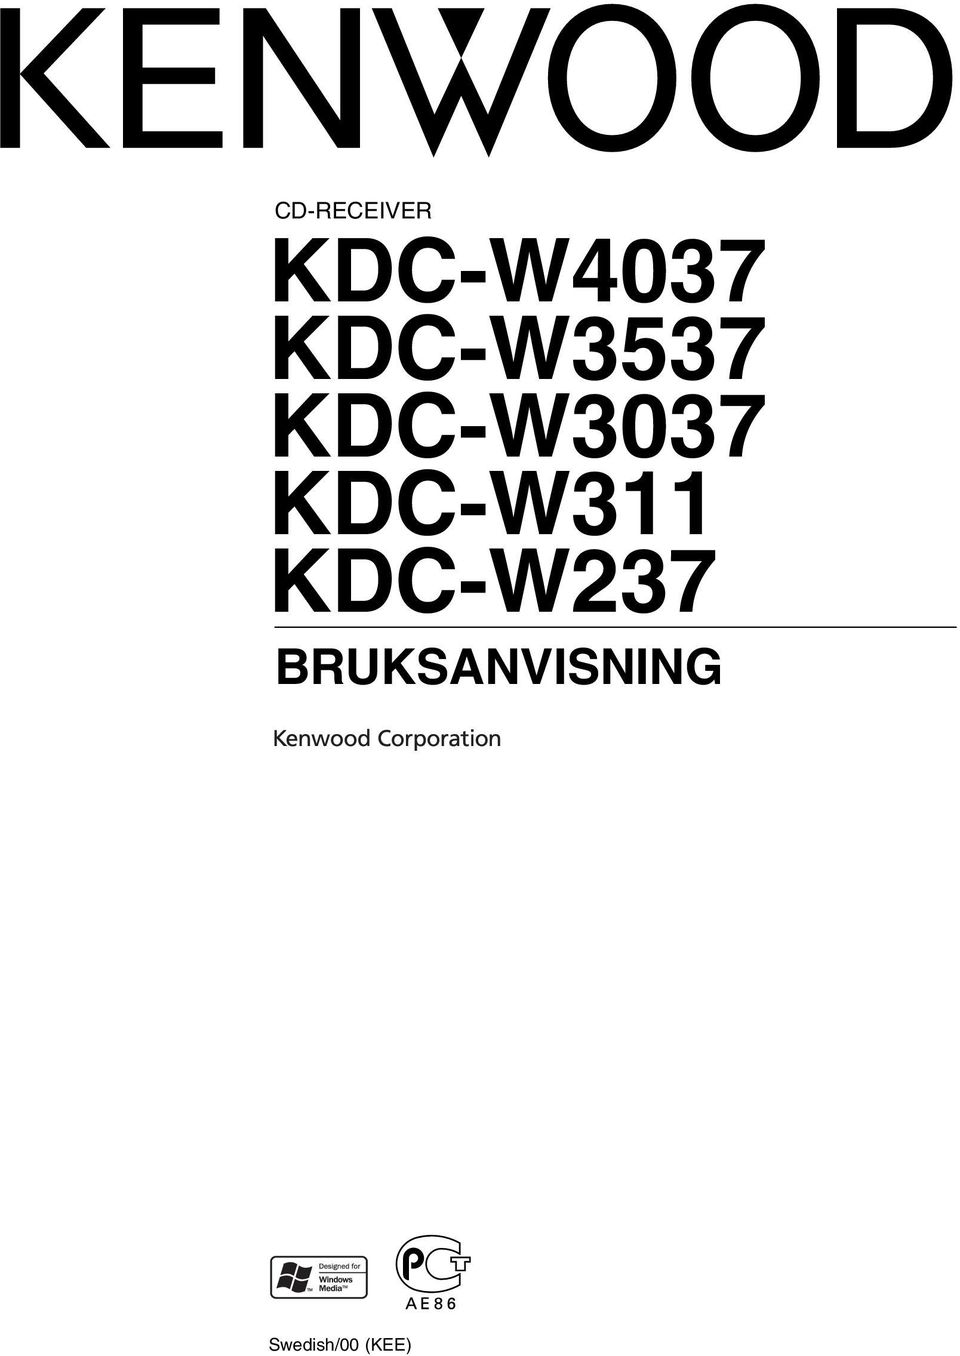 KDC-W311 KDC-W237